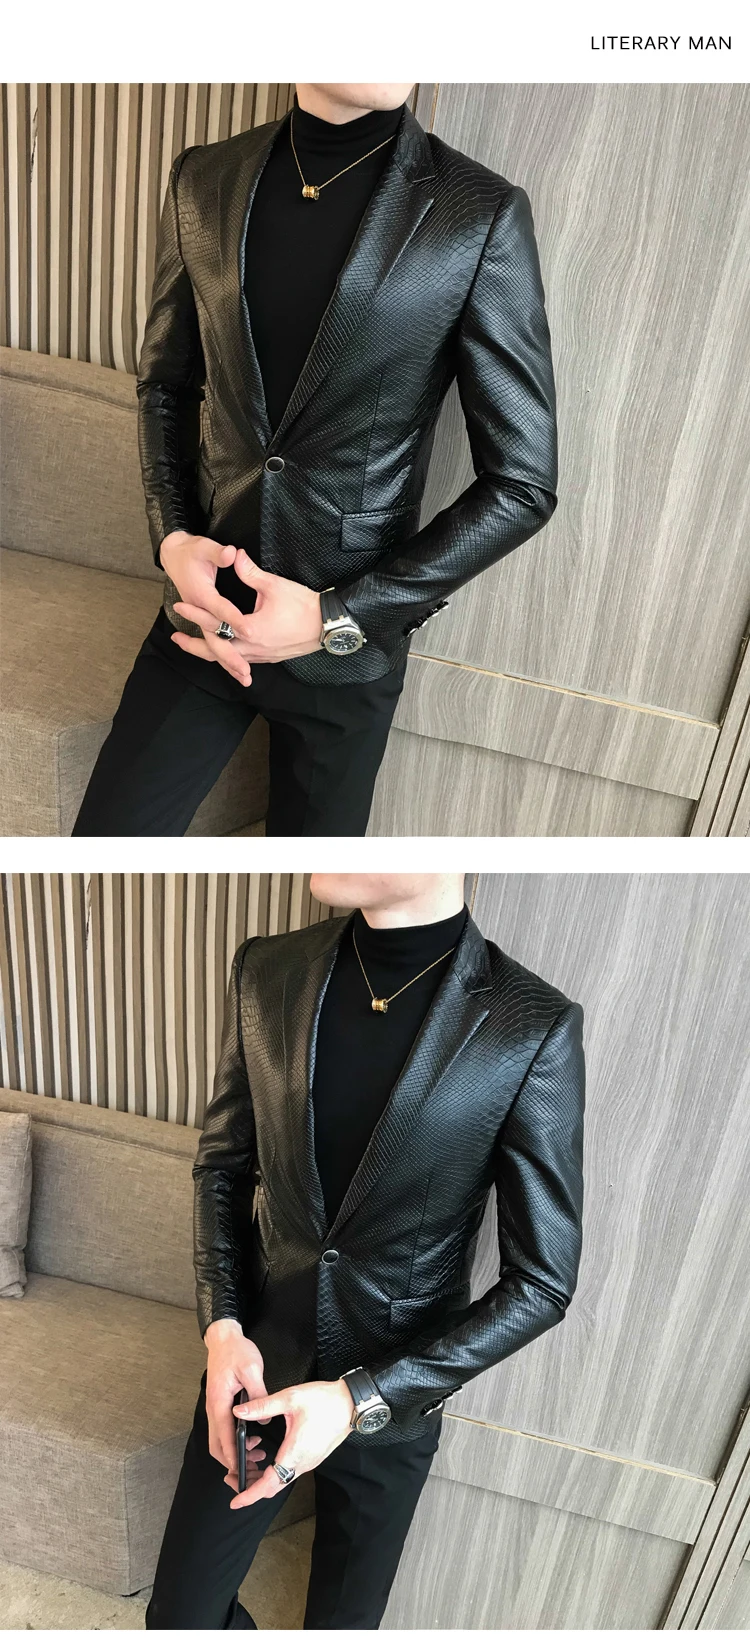 Куртка из искусственной кожи с одной пряжкой, мужская приталенная куртка, мужской черный костюм, куртка для мужчин, танцы в стиле ретро, пионер